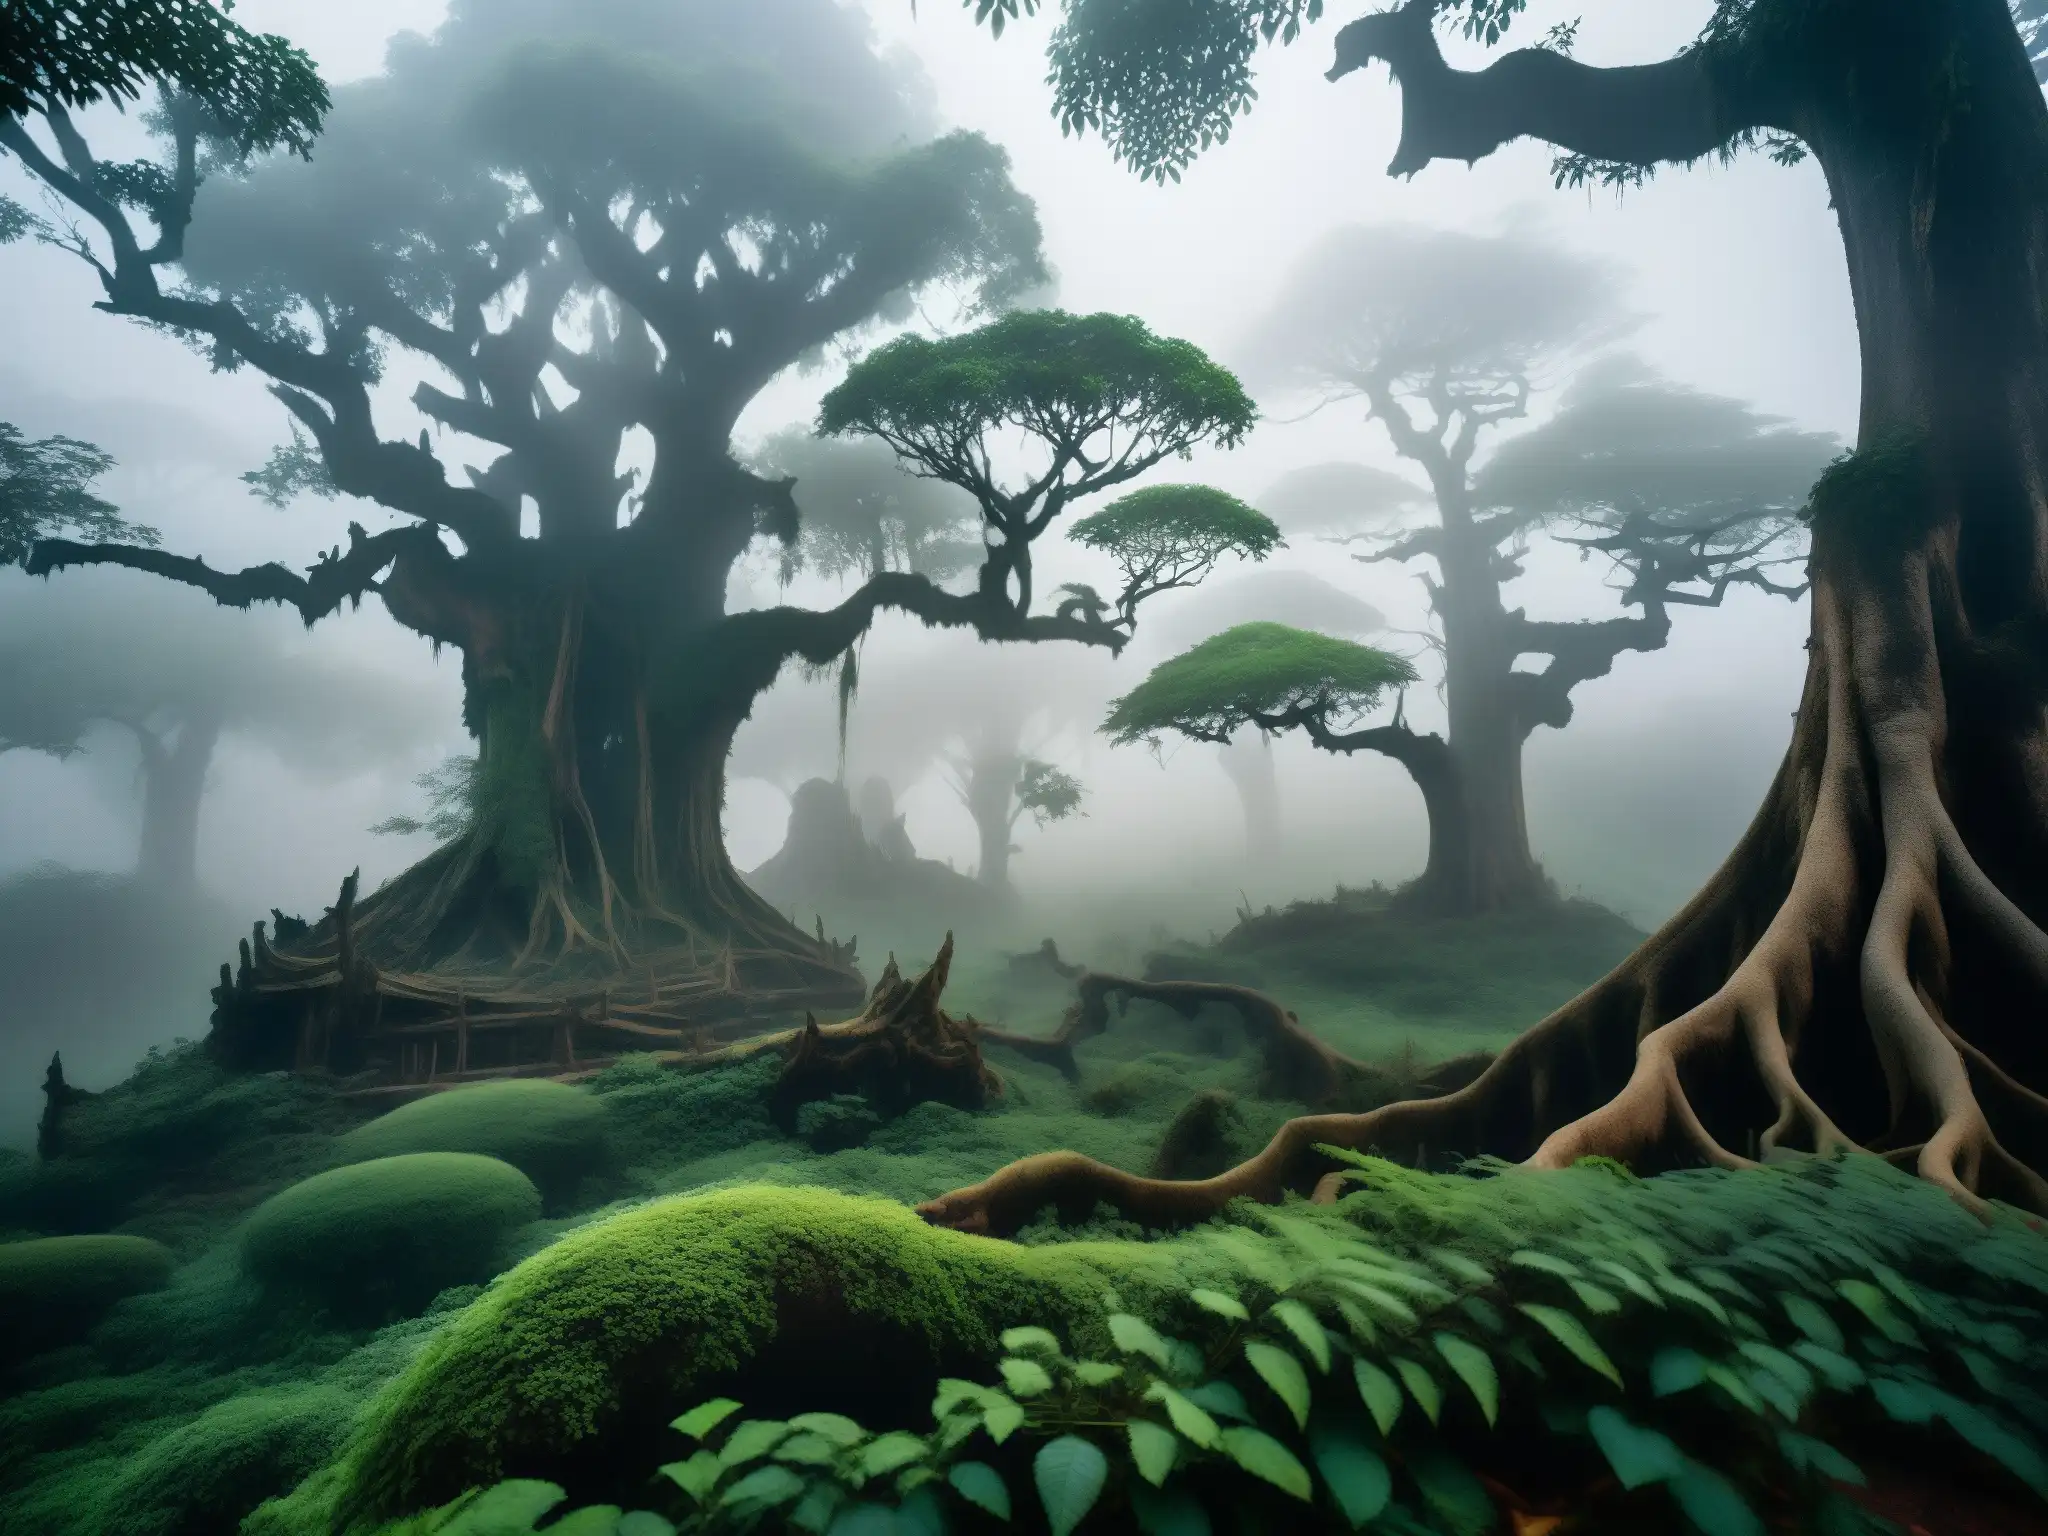 Un bosque misterioso y etéreo en Myanmar, con árboles antiguos y sombras inquietantes